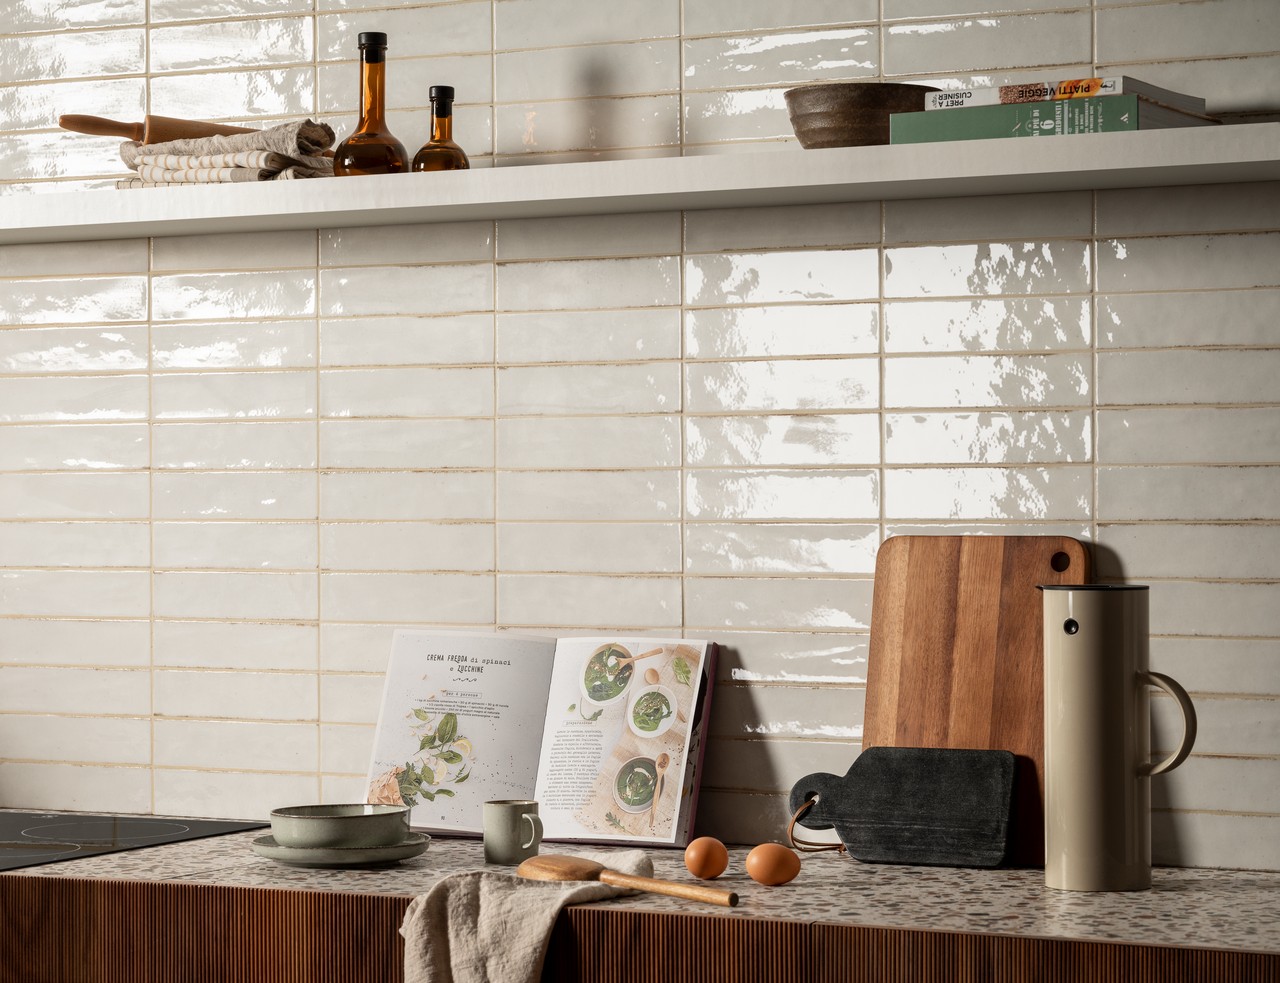 Lineare moderne Küche mit Verkleidung in glänzend Weiß - Inspirationen Iperceramica